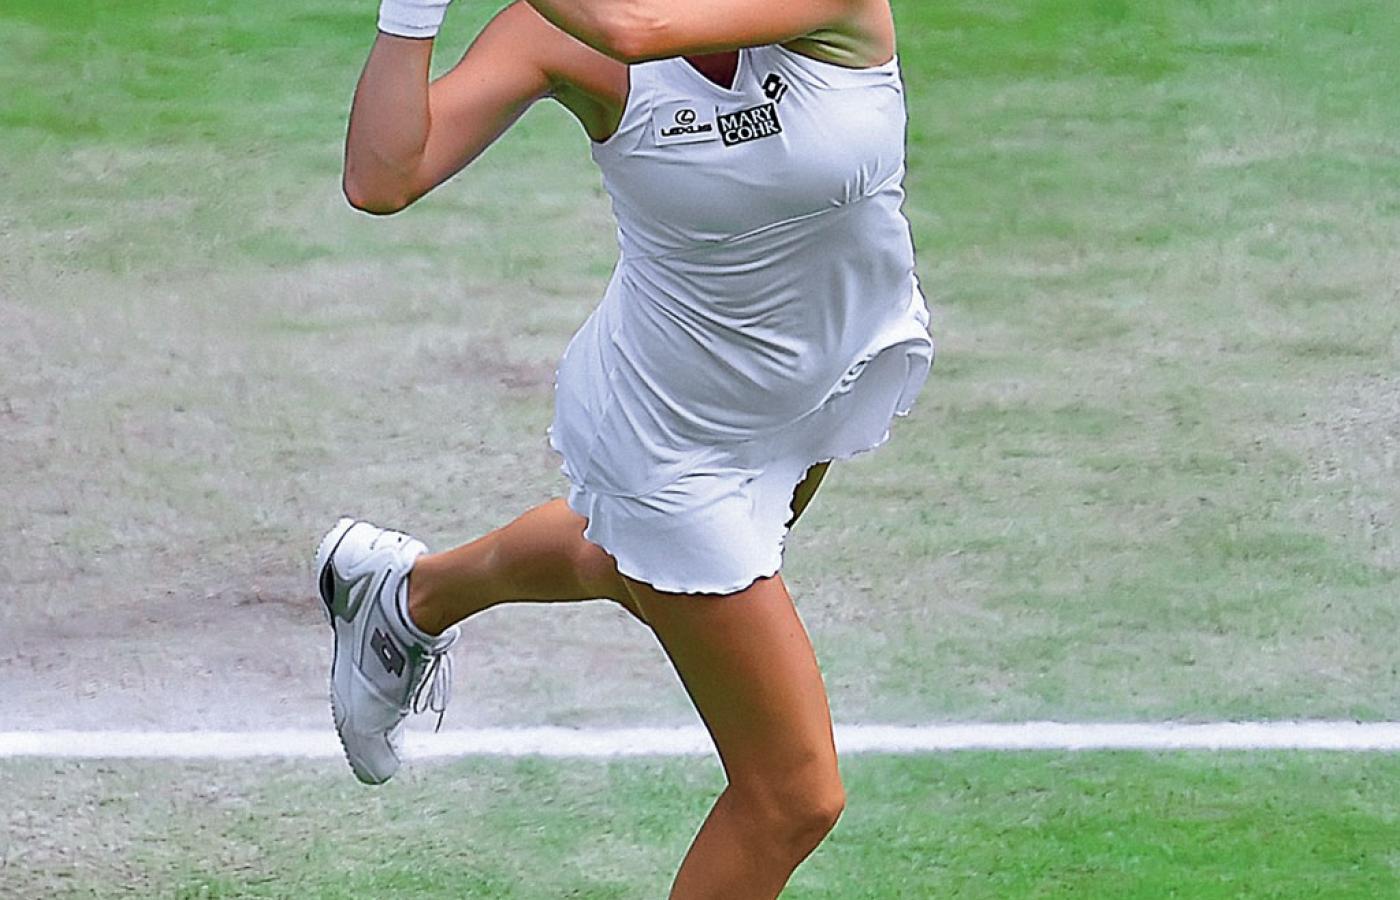 W 2005 r. Isia uzyskała tenisowy status profesjonalny i rozpoczęła mozolną wspinaczkę po szczeblach zawodowej kariery.